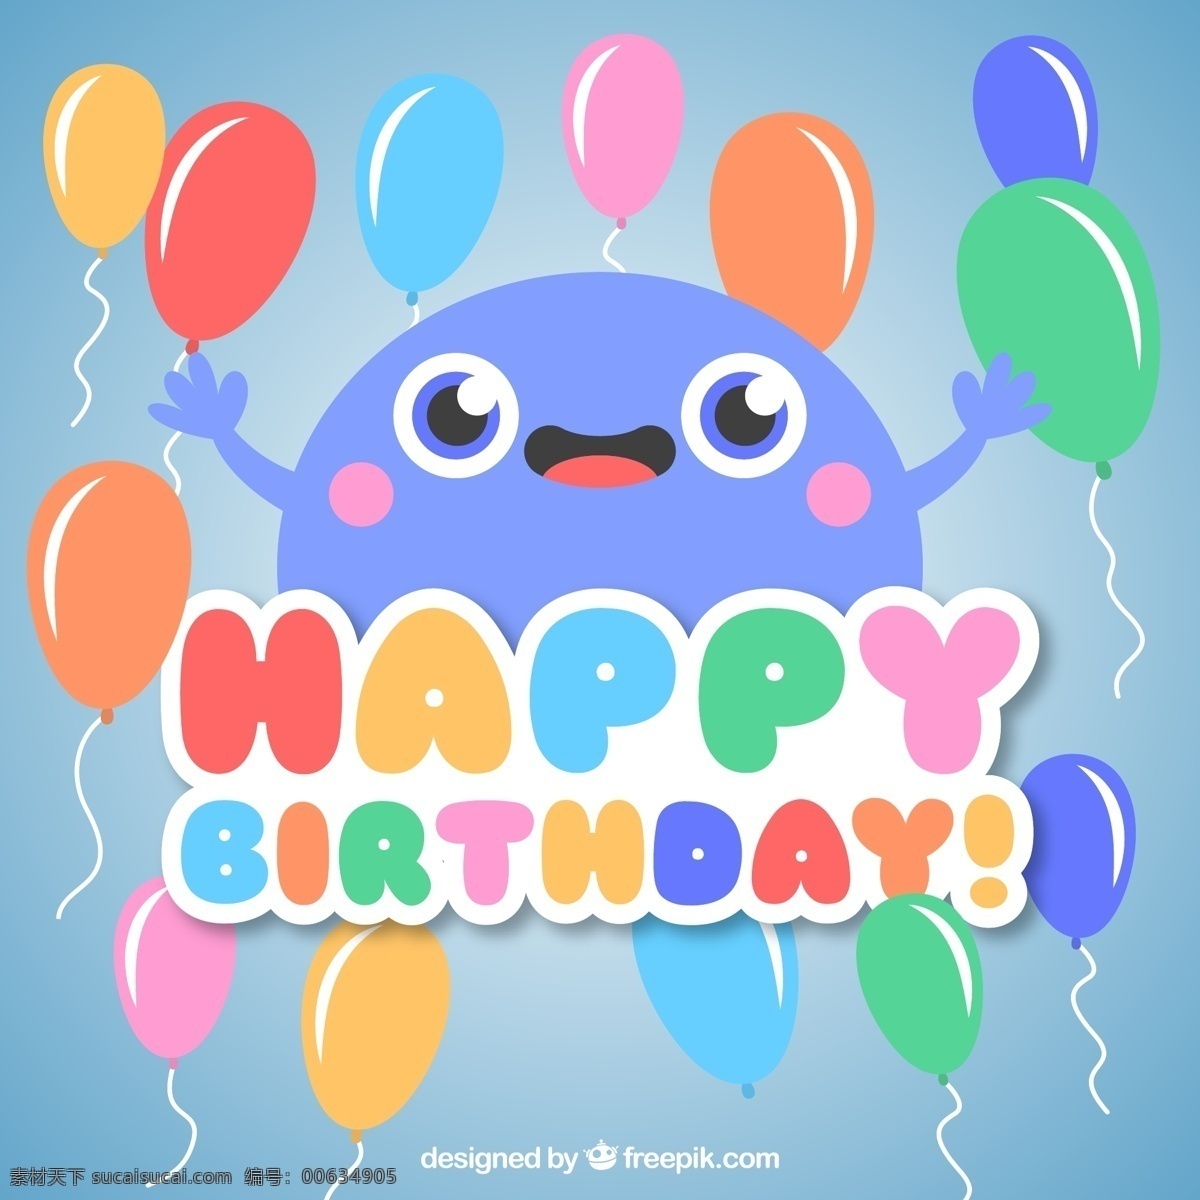 可爱 蓝色 怪物 气球 生日贺卡 矢量 happy birthday 生日快乐 生日 贺卡 矢量图